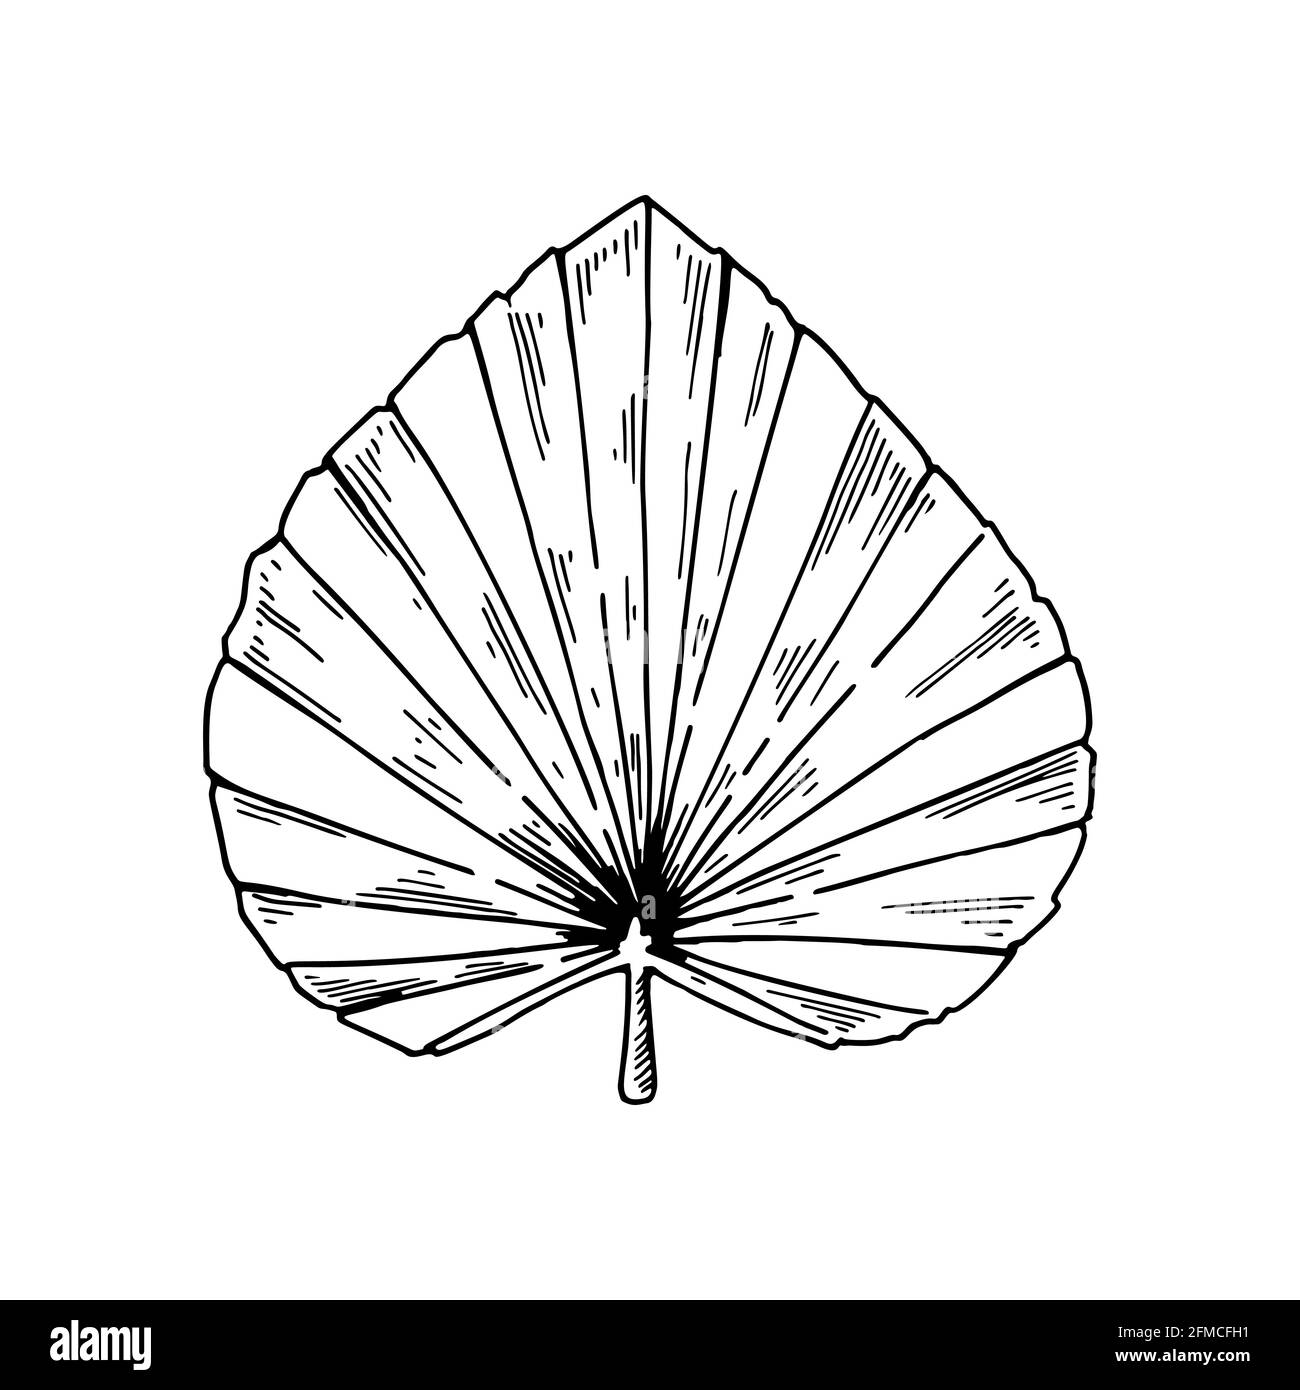 Foglia di palma secca disegnata a mano isolata su bianco. Illustrazione vettoriale nello stile di schizzo. Illustrazione Vettoriale